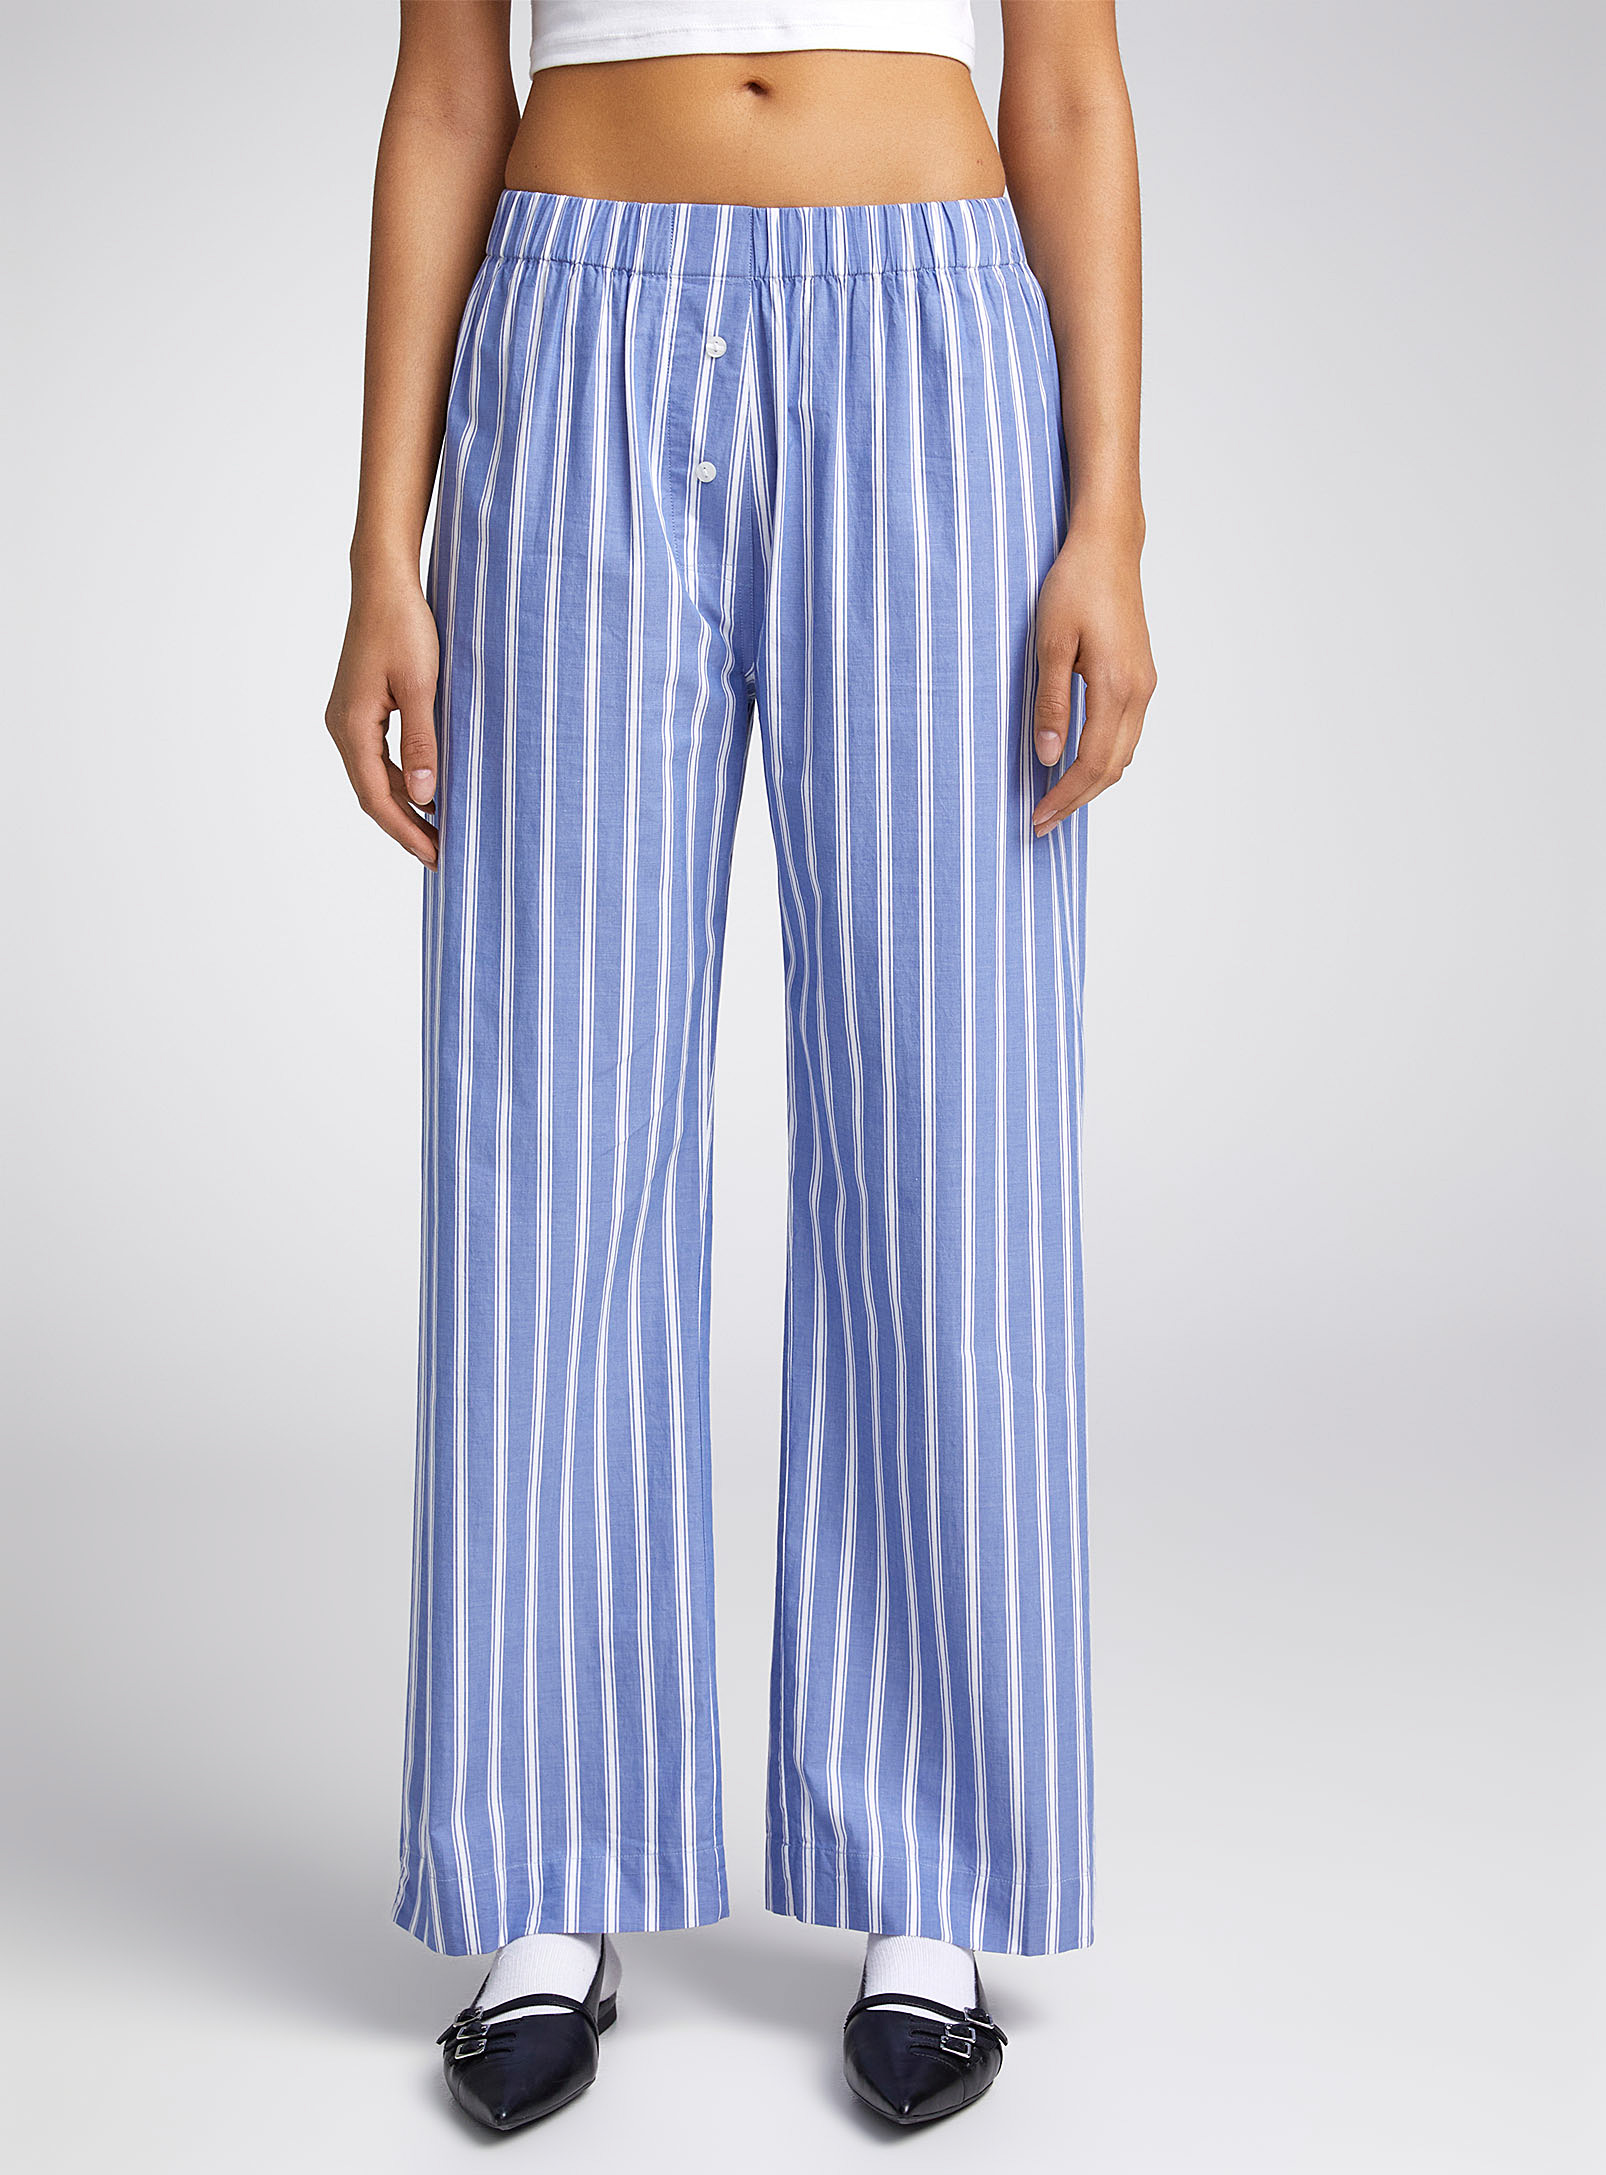 Twik - Women's Two-button striped straight-leg pant